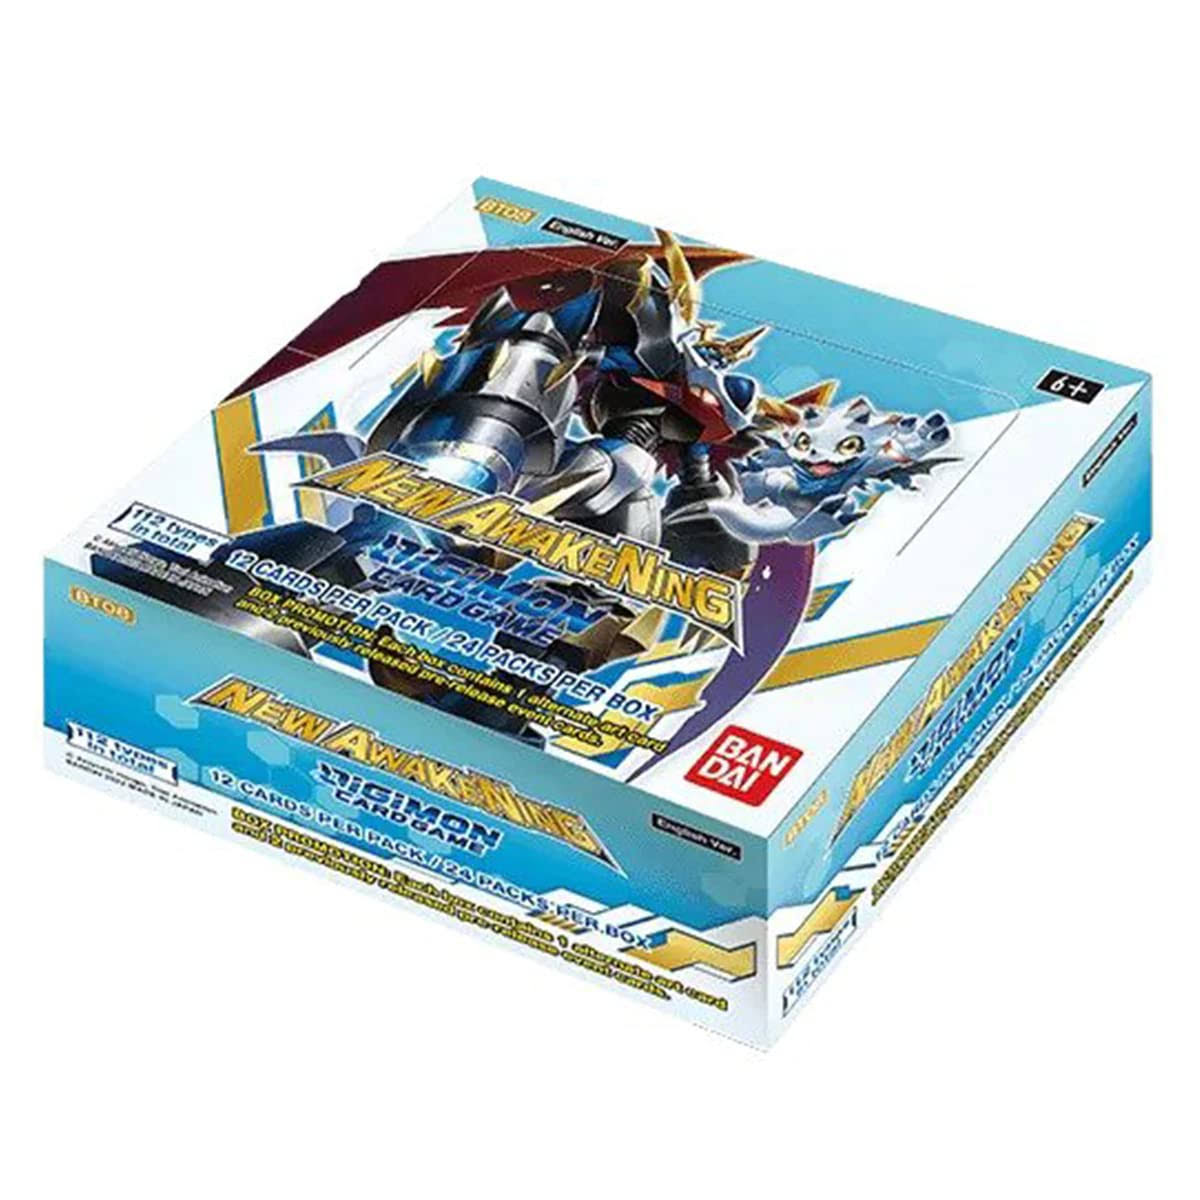 Digimon Card Game Series 08 New Awakening (BT08) Booster Box